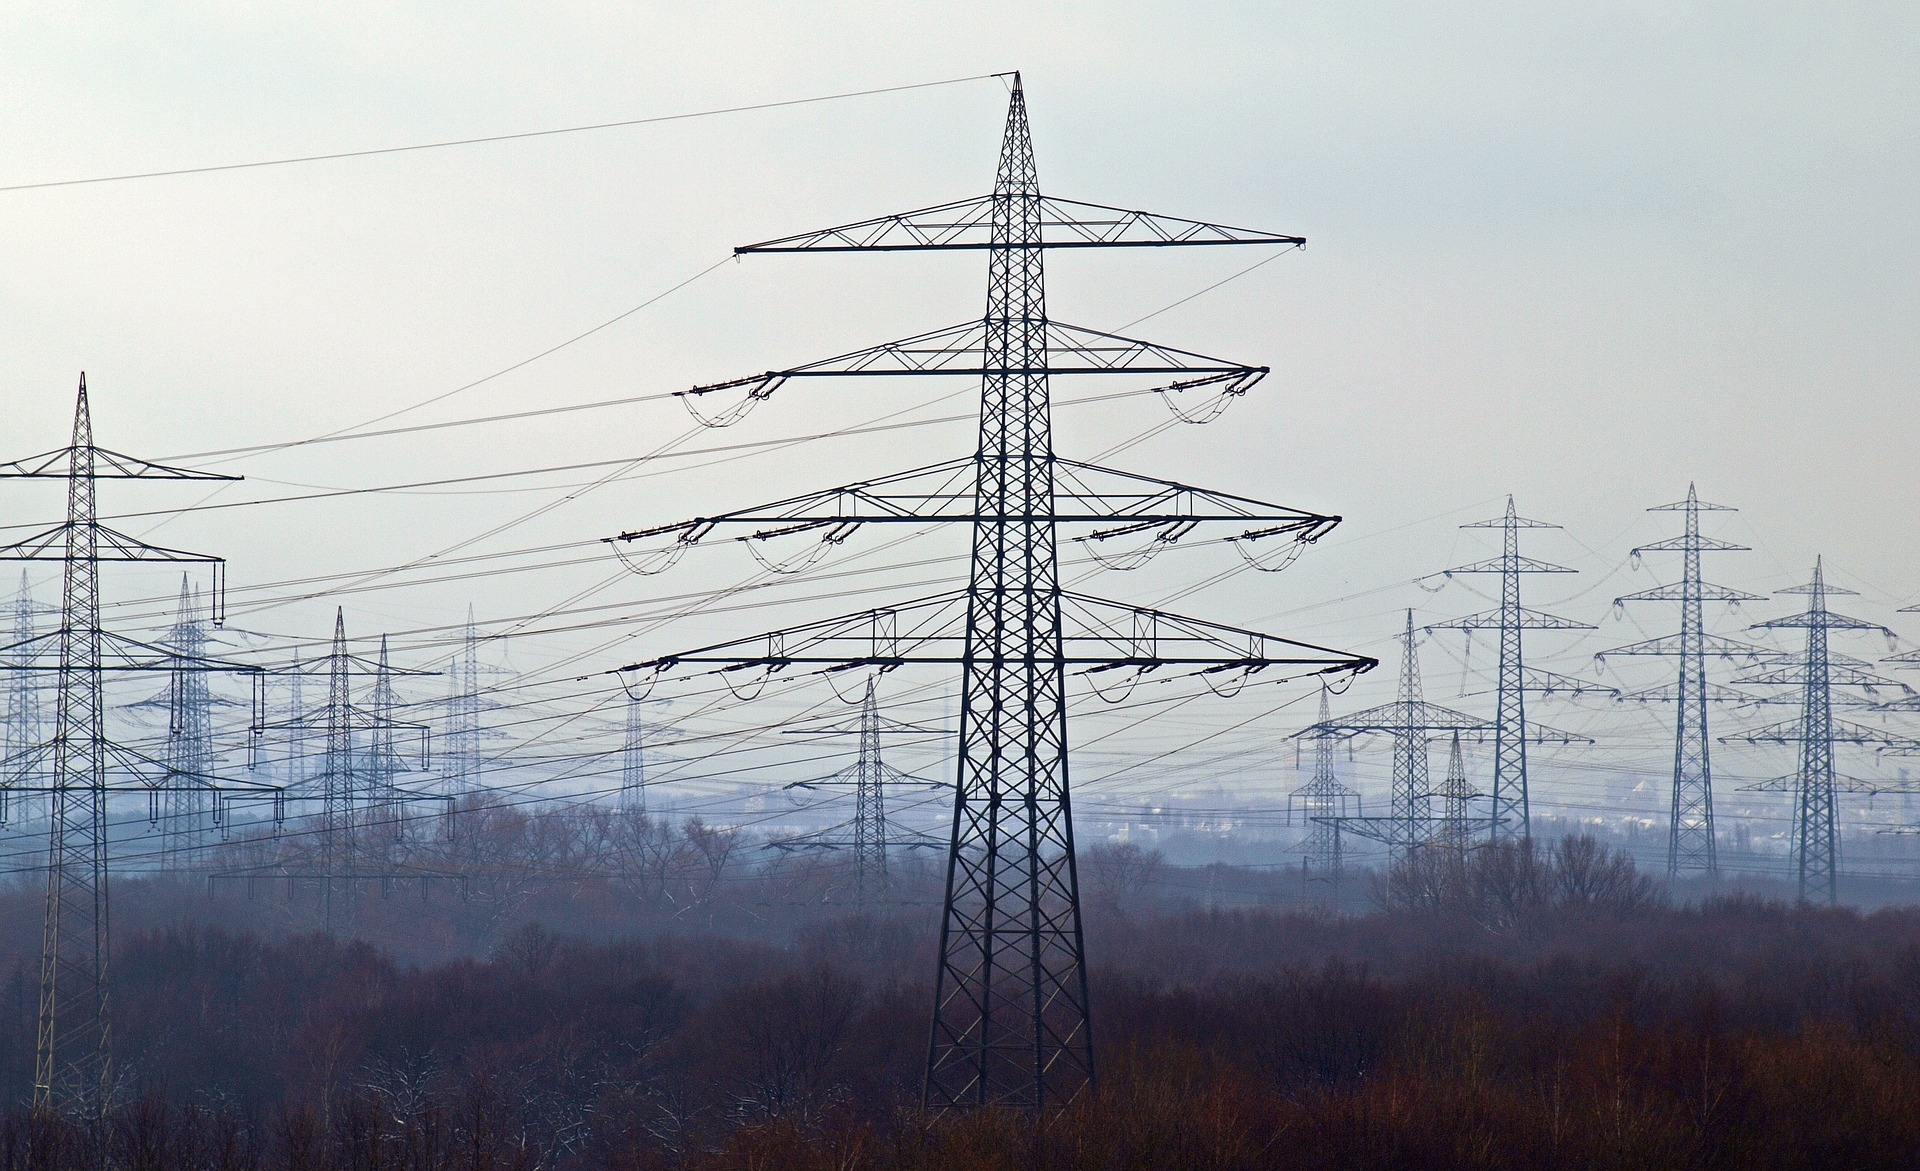 Seimo opozicija inicijuoja tyrimą dėl galimo elektros tiekėjų piktnaudžiavimo